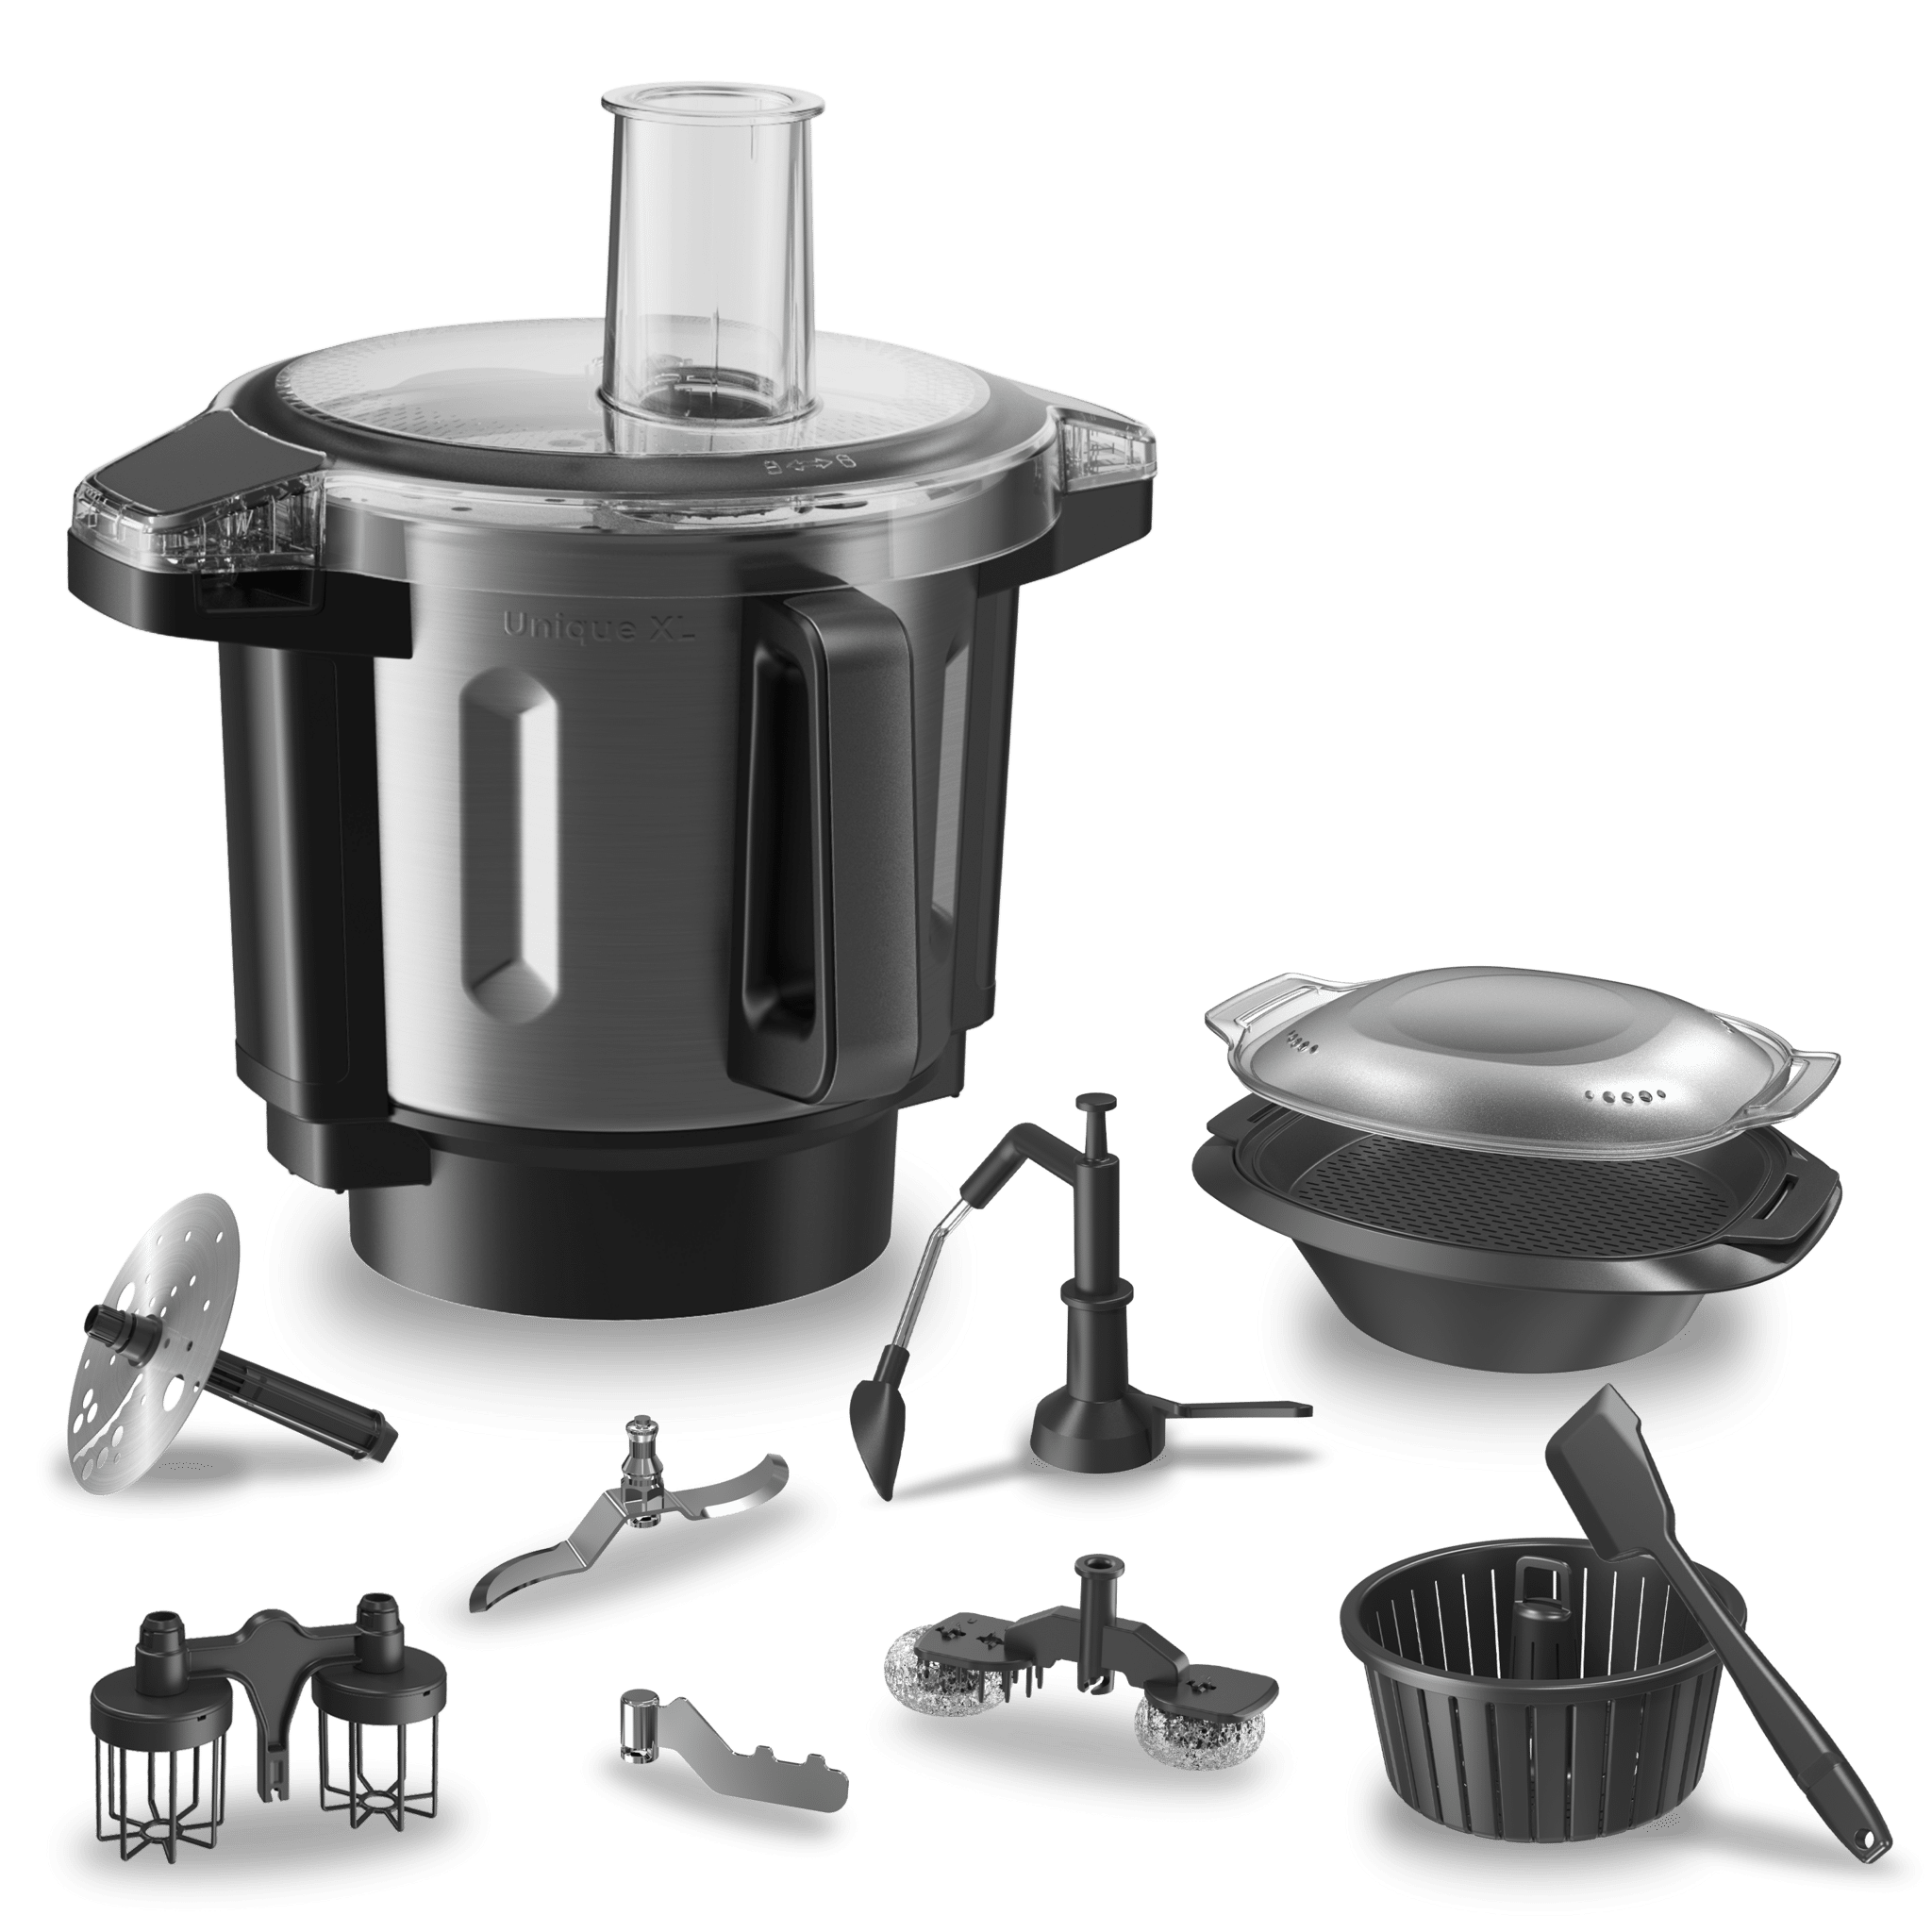 Cecotec - Consuigue el NUEVO robot de cocina Mambo Touch con jarra Habana  por solo 399 €. 🤩 ✔️Más funcional y completo. ✔️Más de 35 elaboraciones.  ✔️Más cómodo, fácil y preciso en